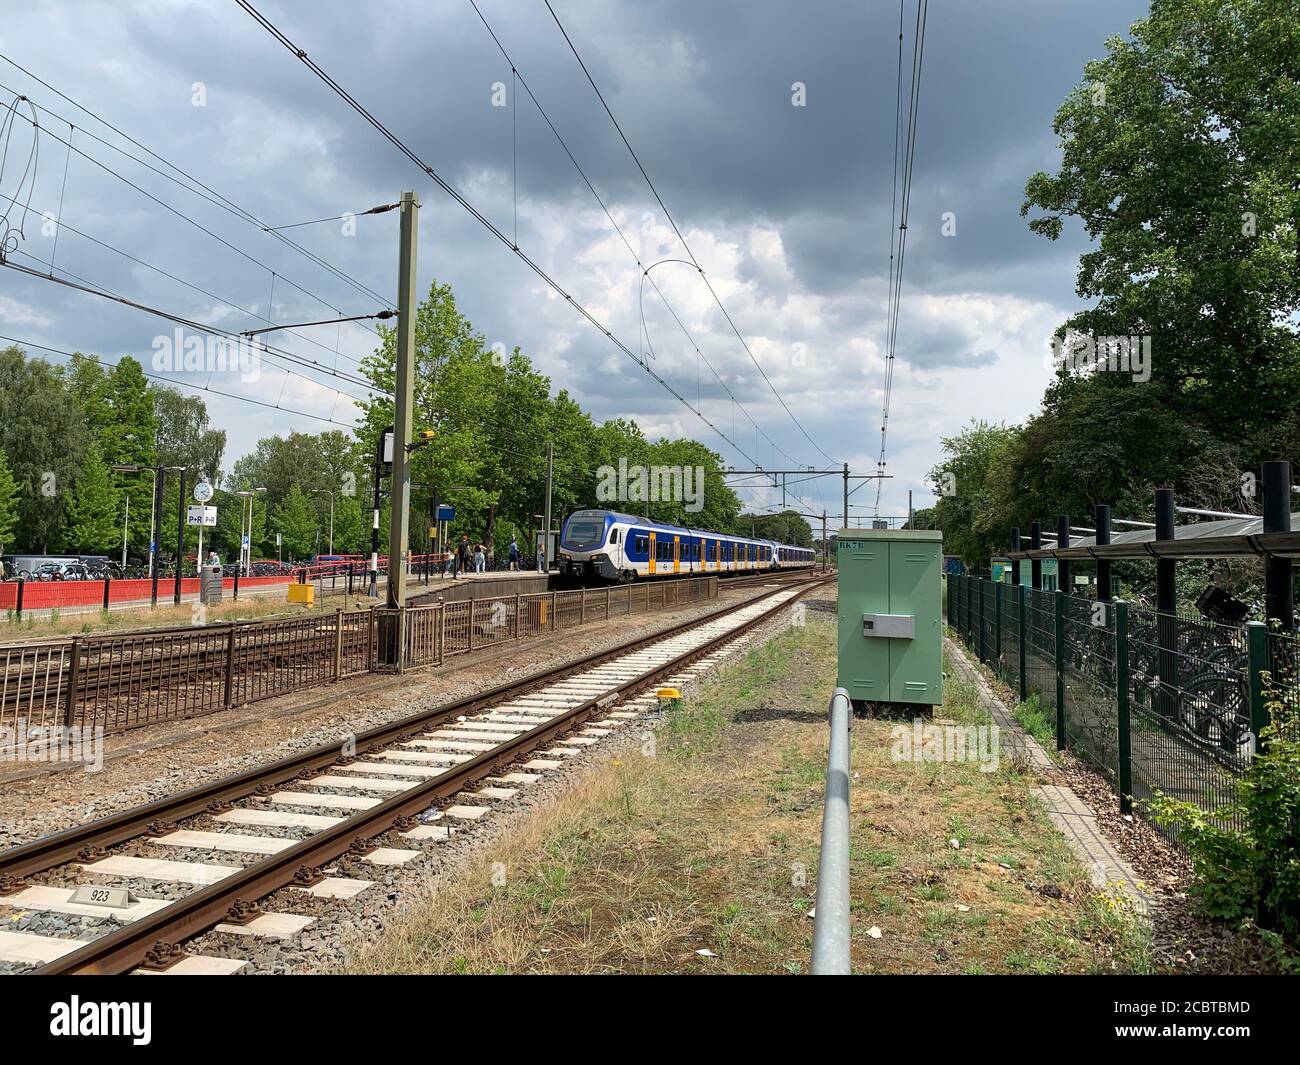 Train NS à la gare. Gare de l'Université de Tilburg Tilburg, Brabant Nord, pays-Bas. Banque D'Images